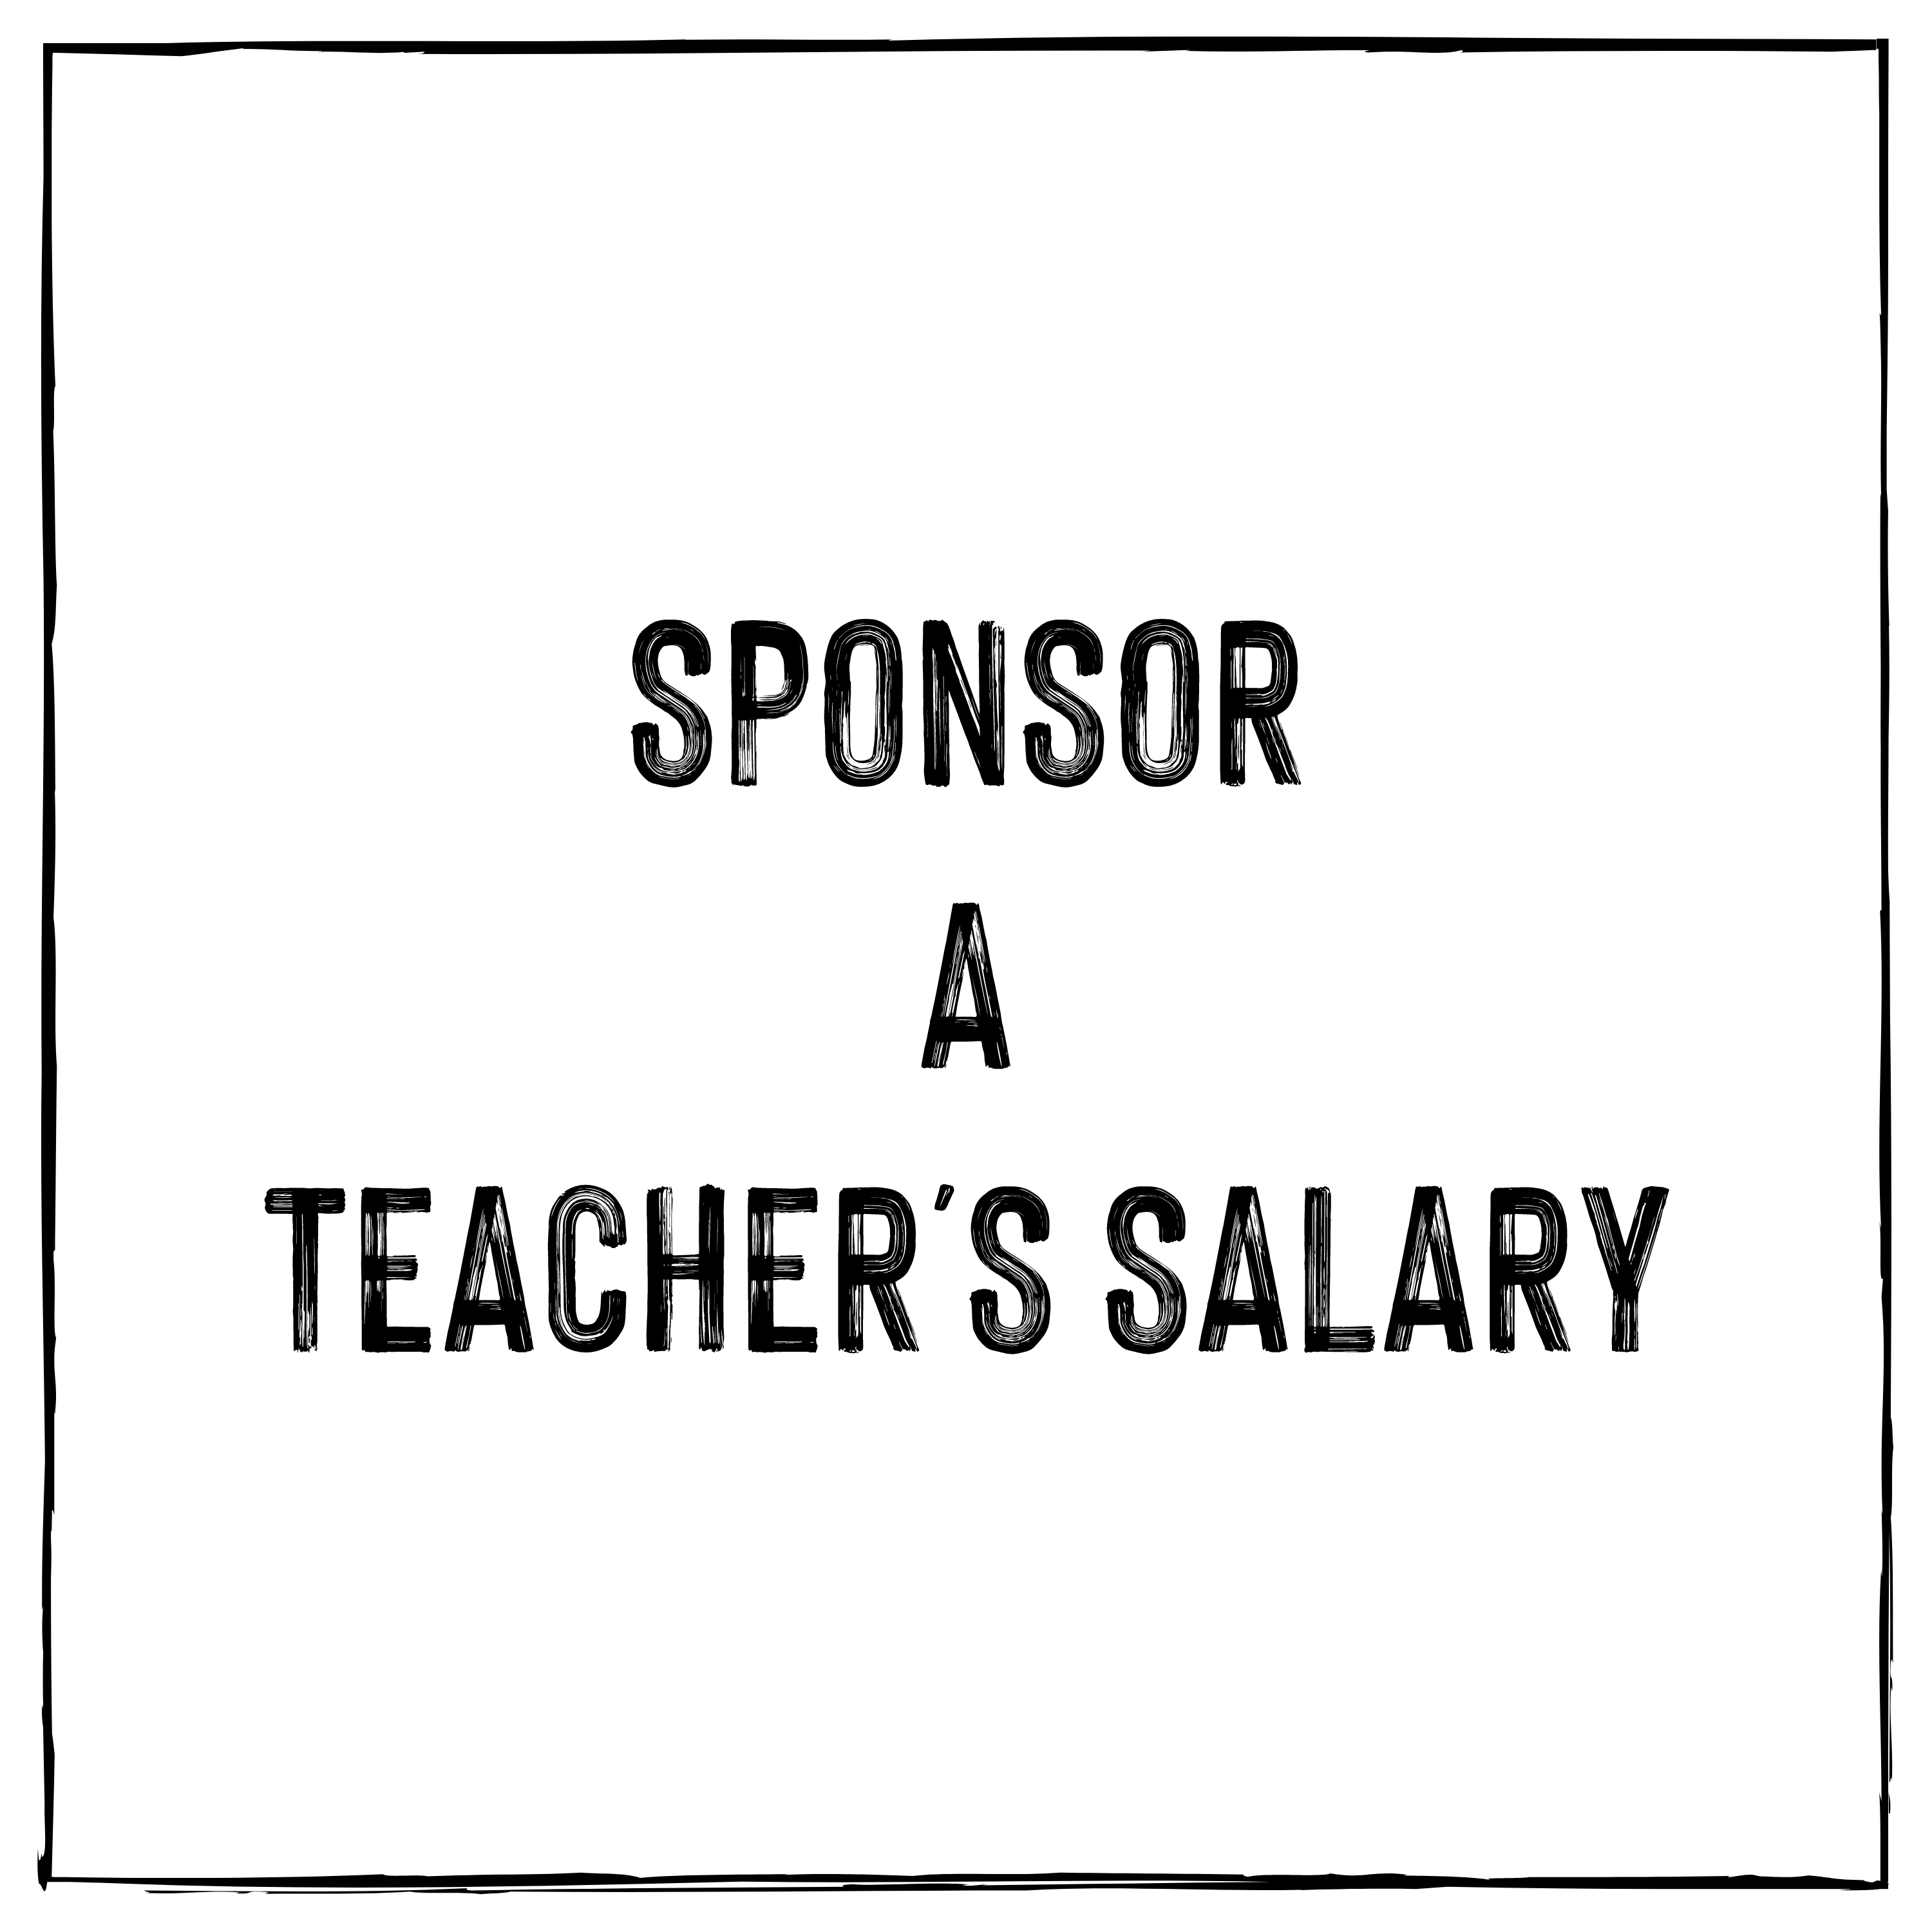 Sponsor a Teacher's Salary